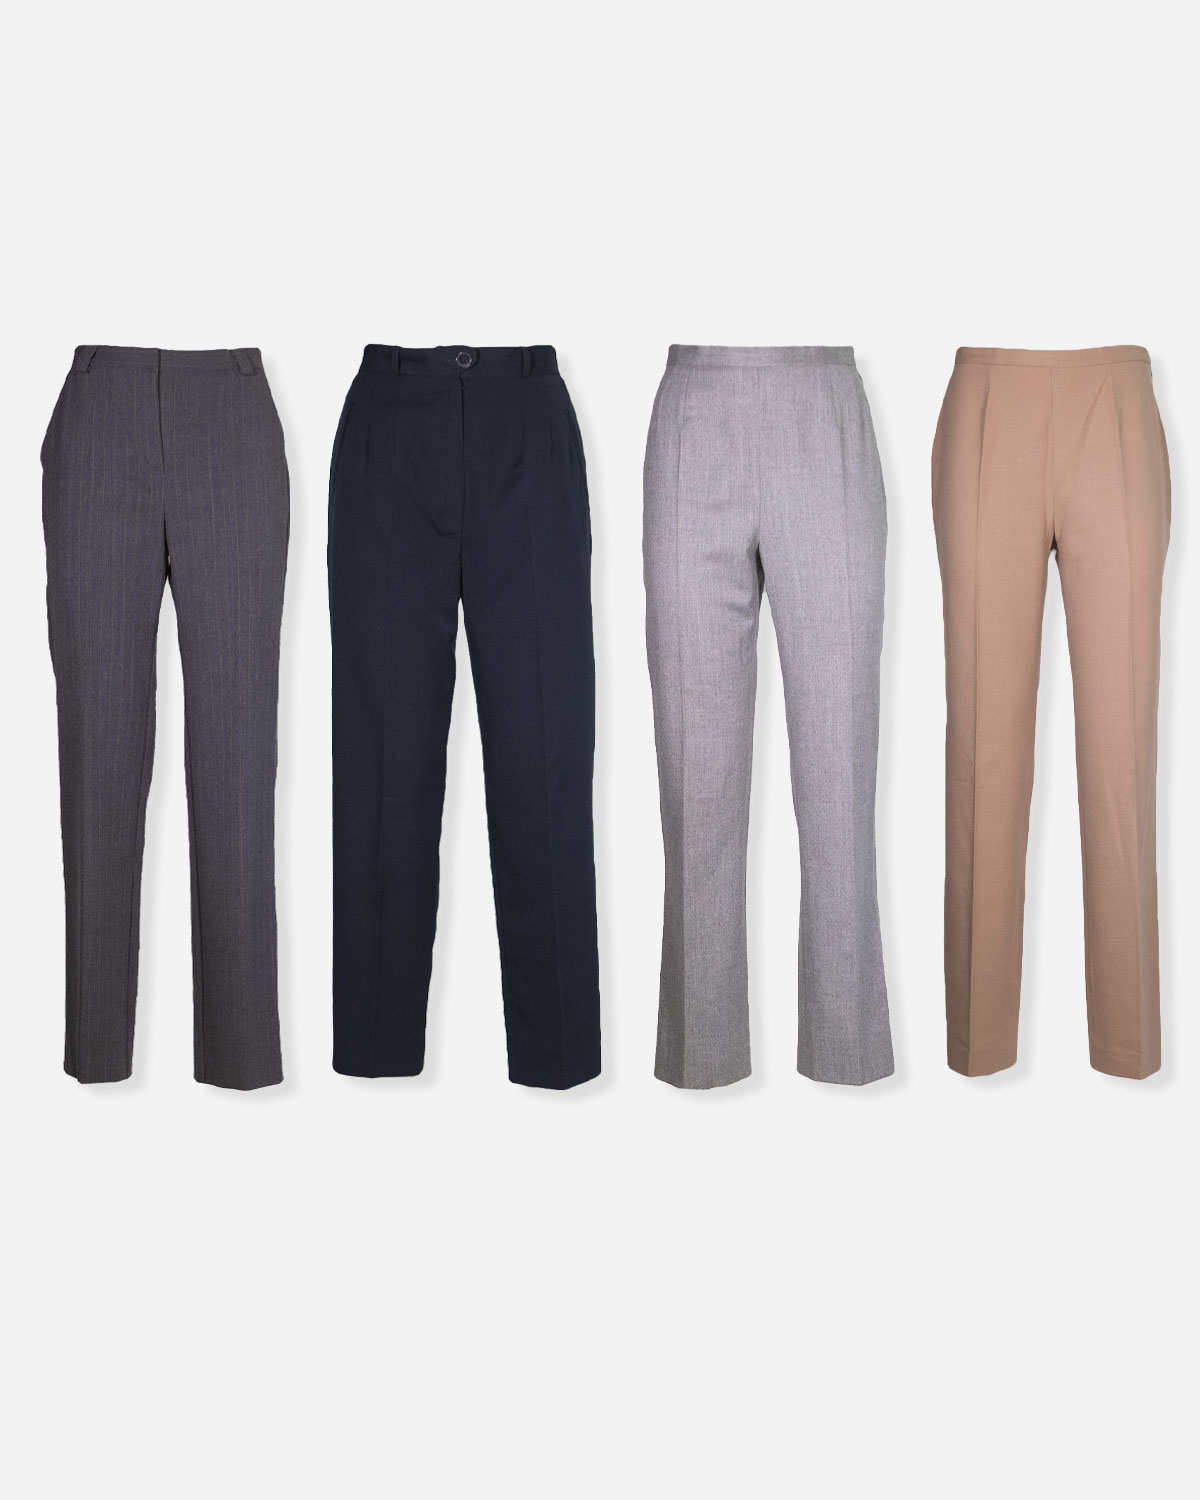 Women's cotton designer pants: 4 pieces